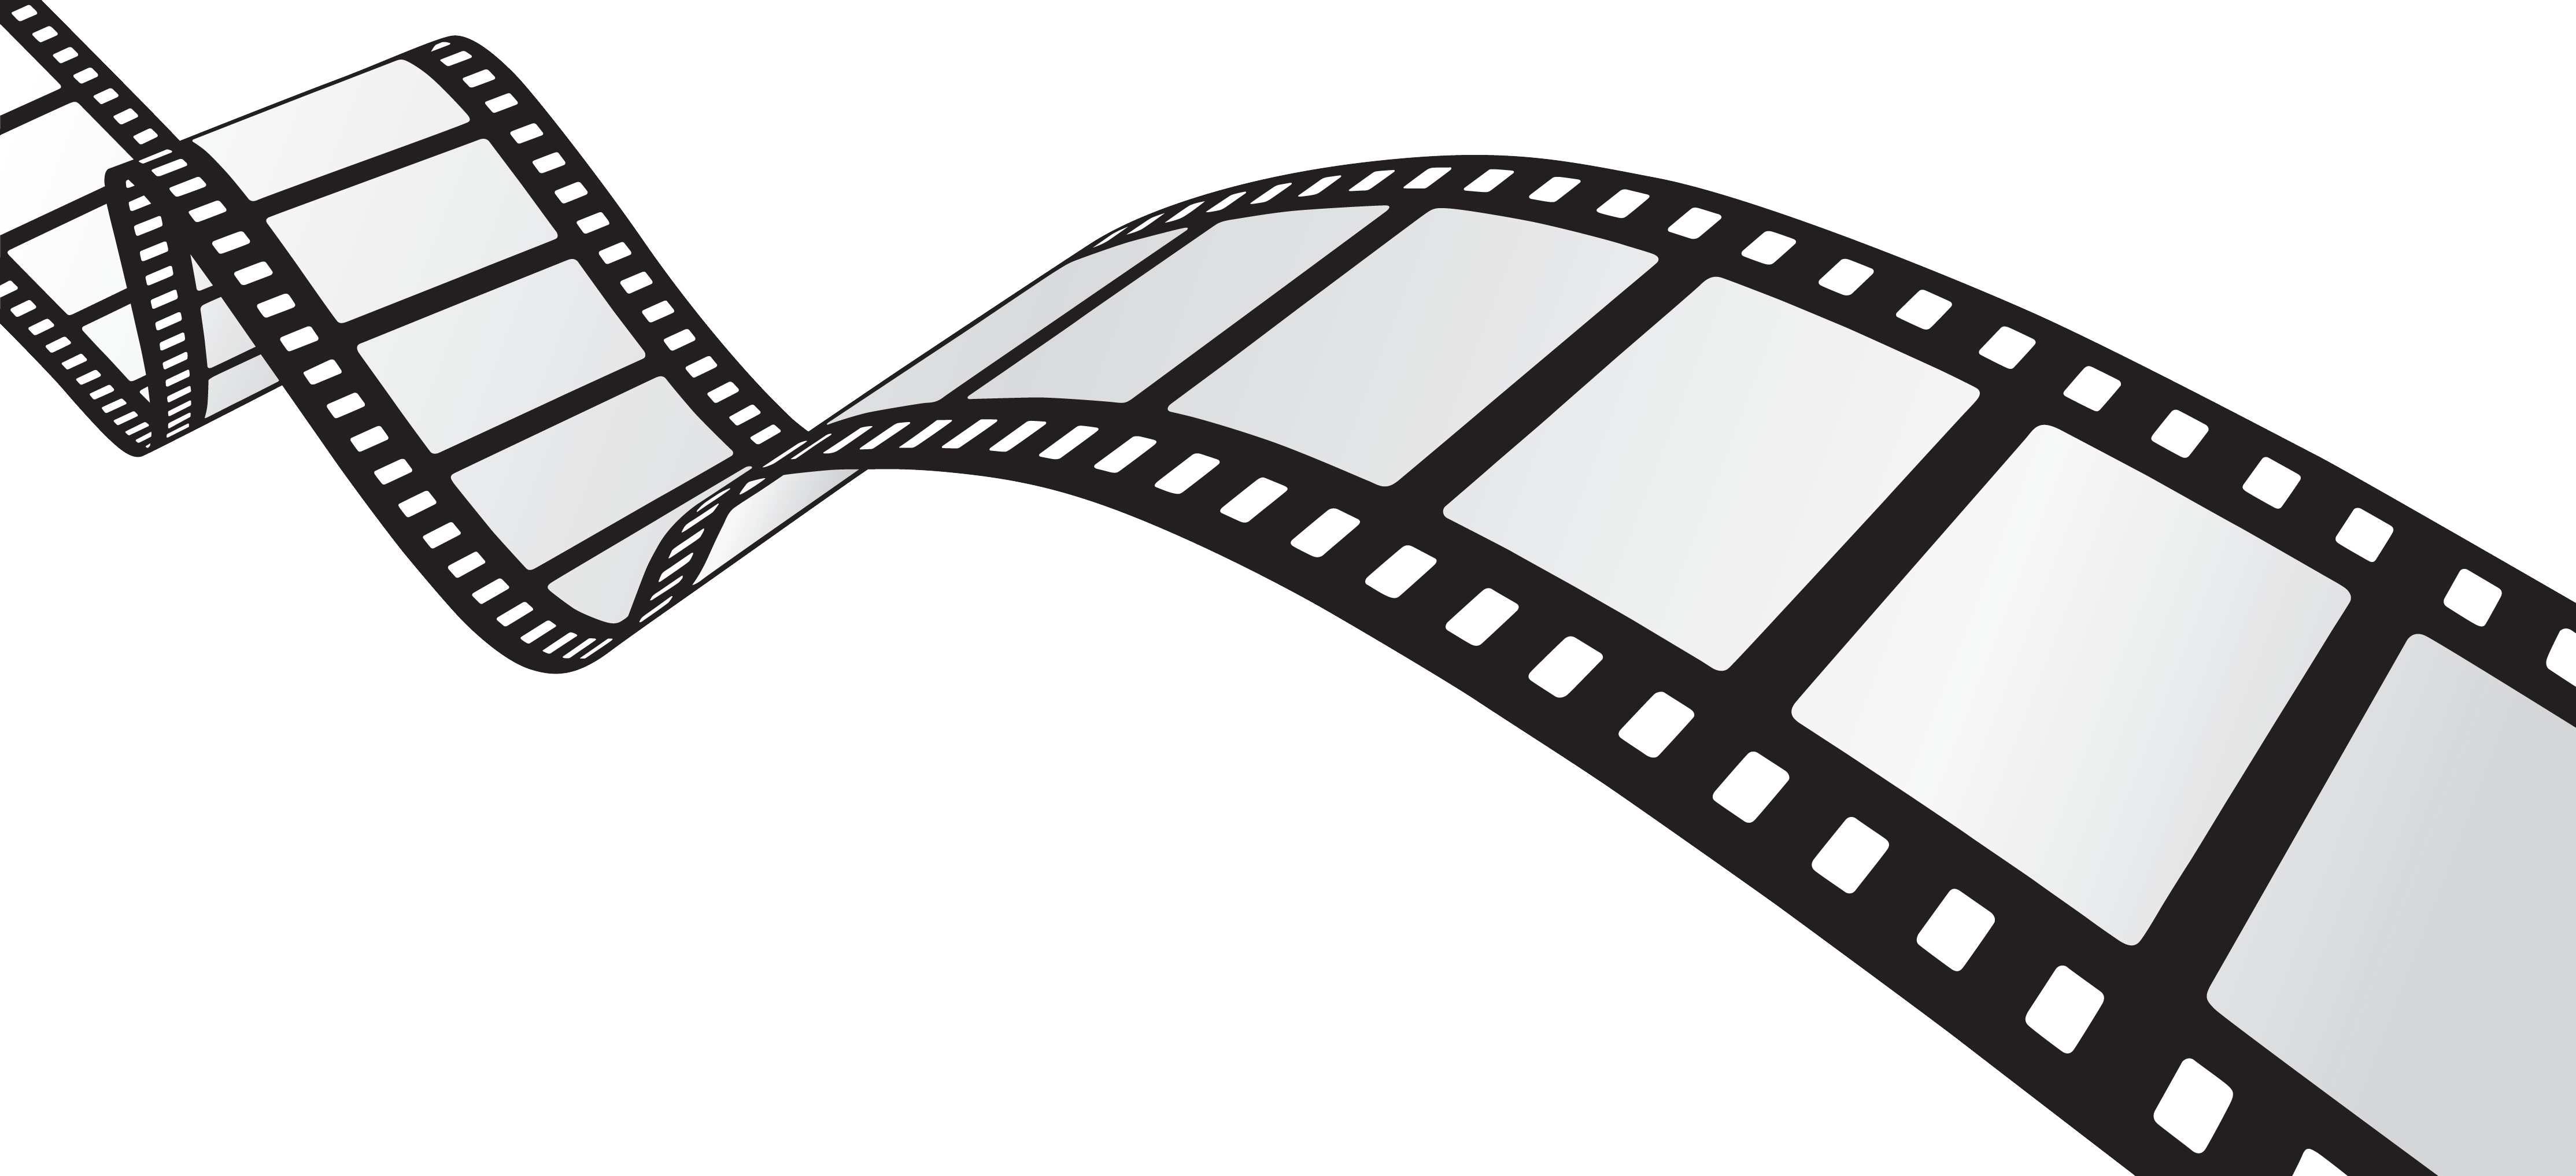 Filmstrip Png Image With Film Reel